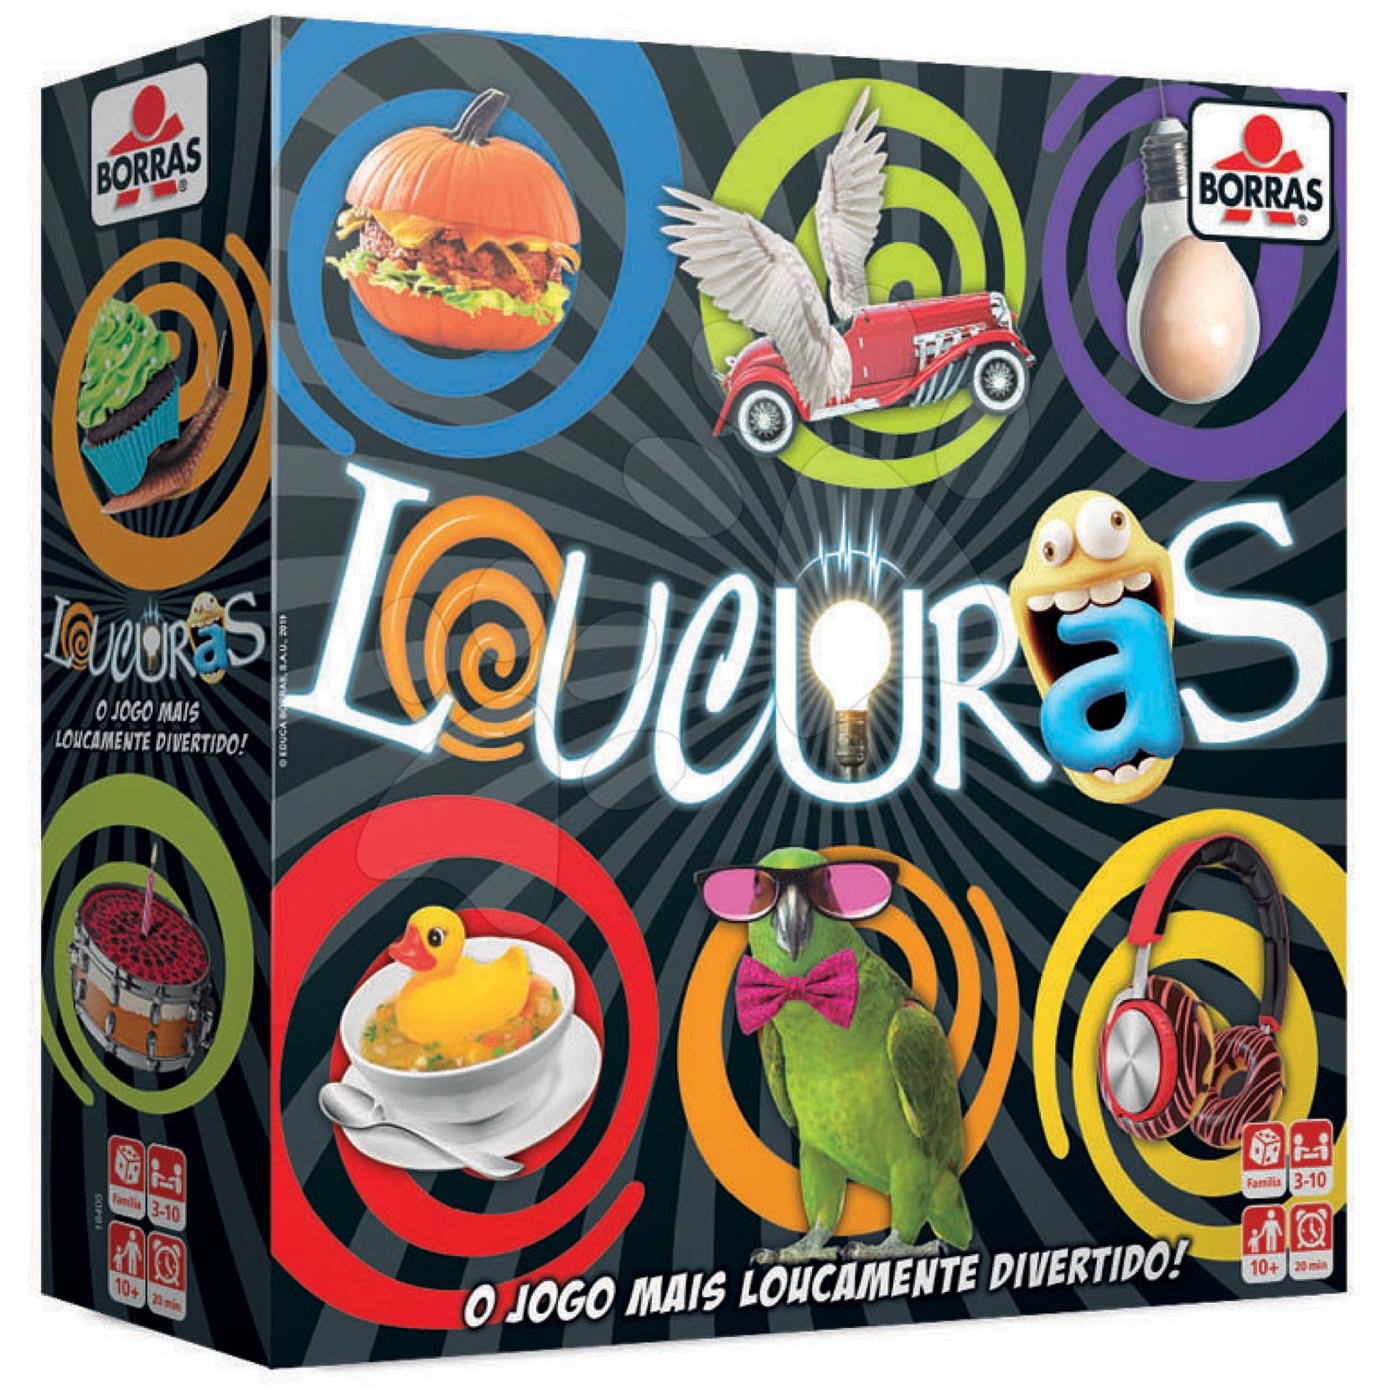 Cudzojazyčné spoločenské hry - Spoločenská hra Loucuras Educa po španielsky pre 3-10 hráčov od 10 rokov